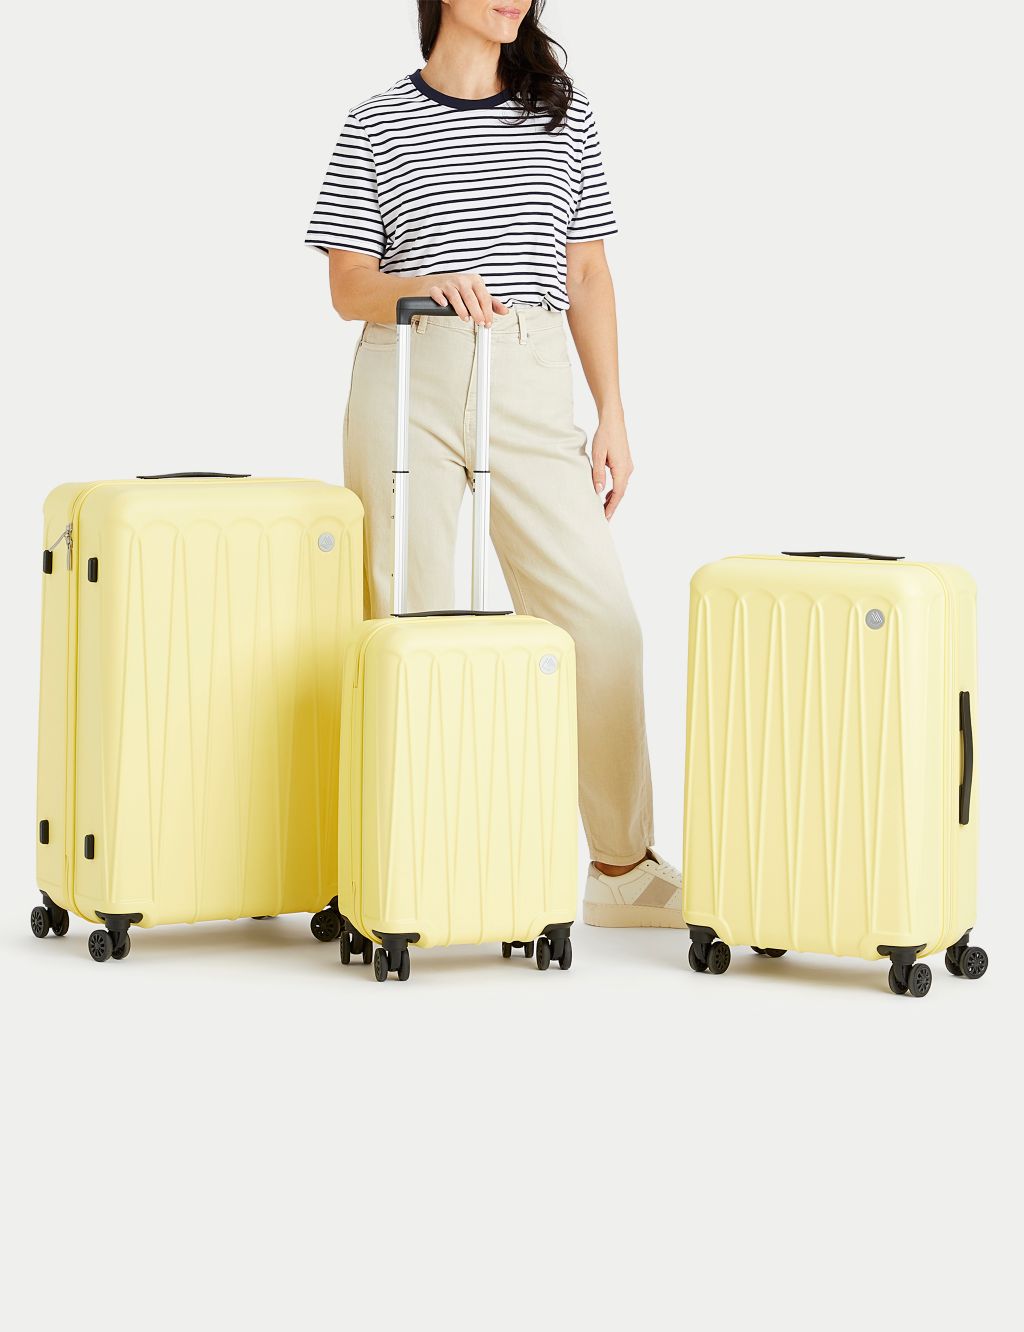 Amalfi 4 Wheel Hard Shell Large Suitcase 6 of 10